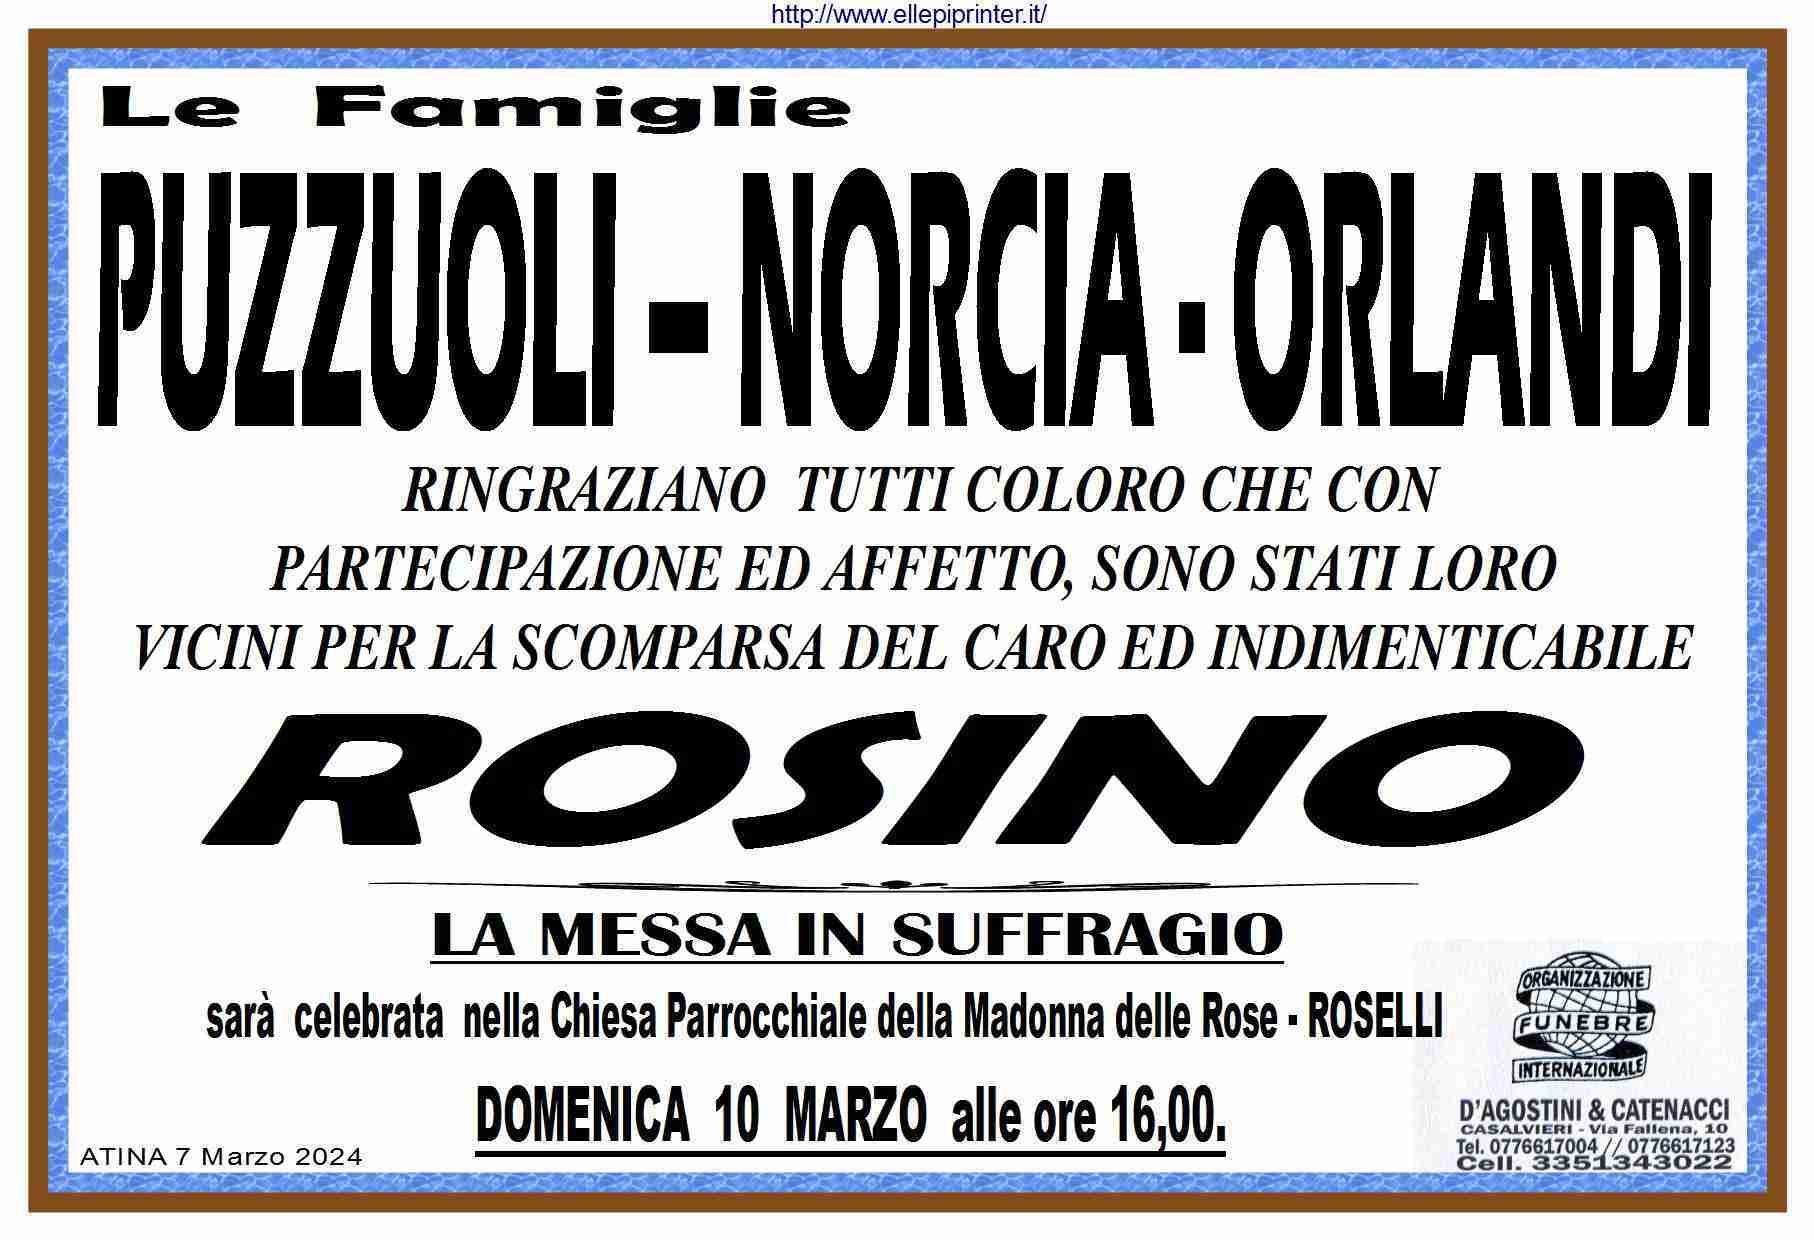 Rosino Puzzuoli